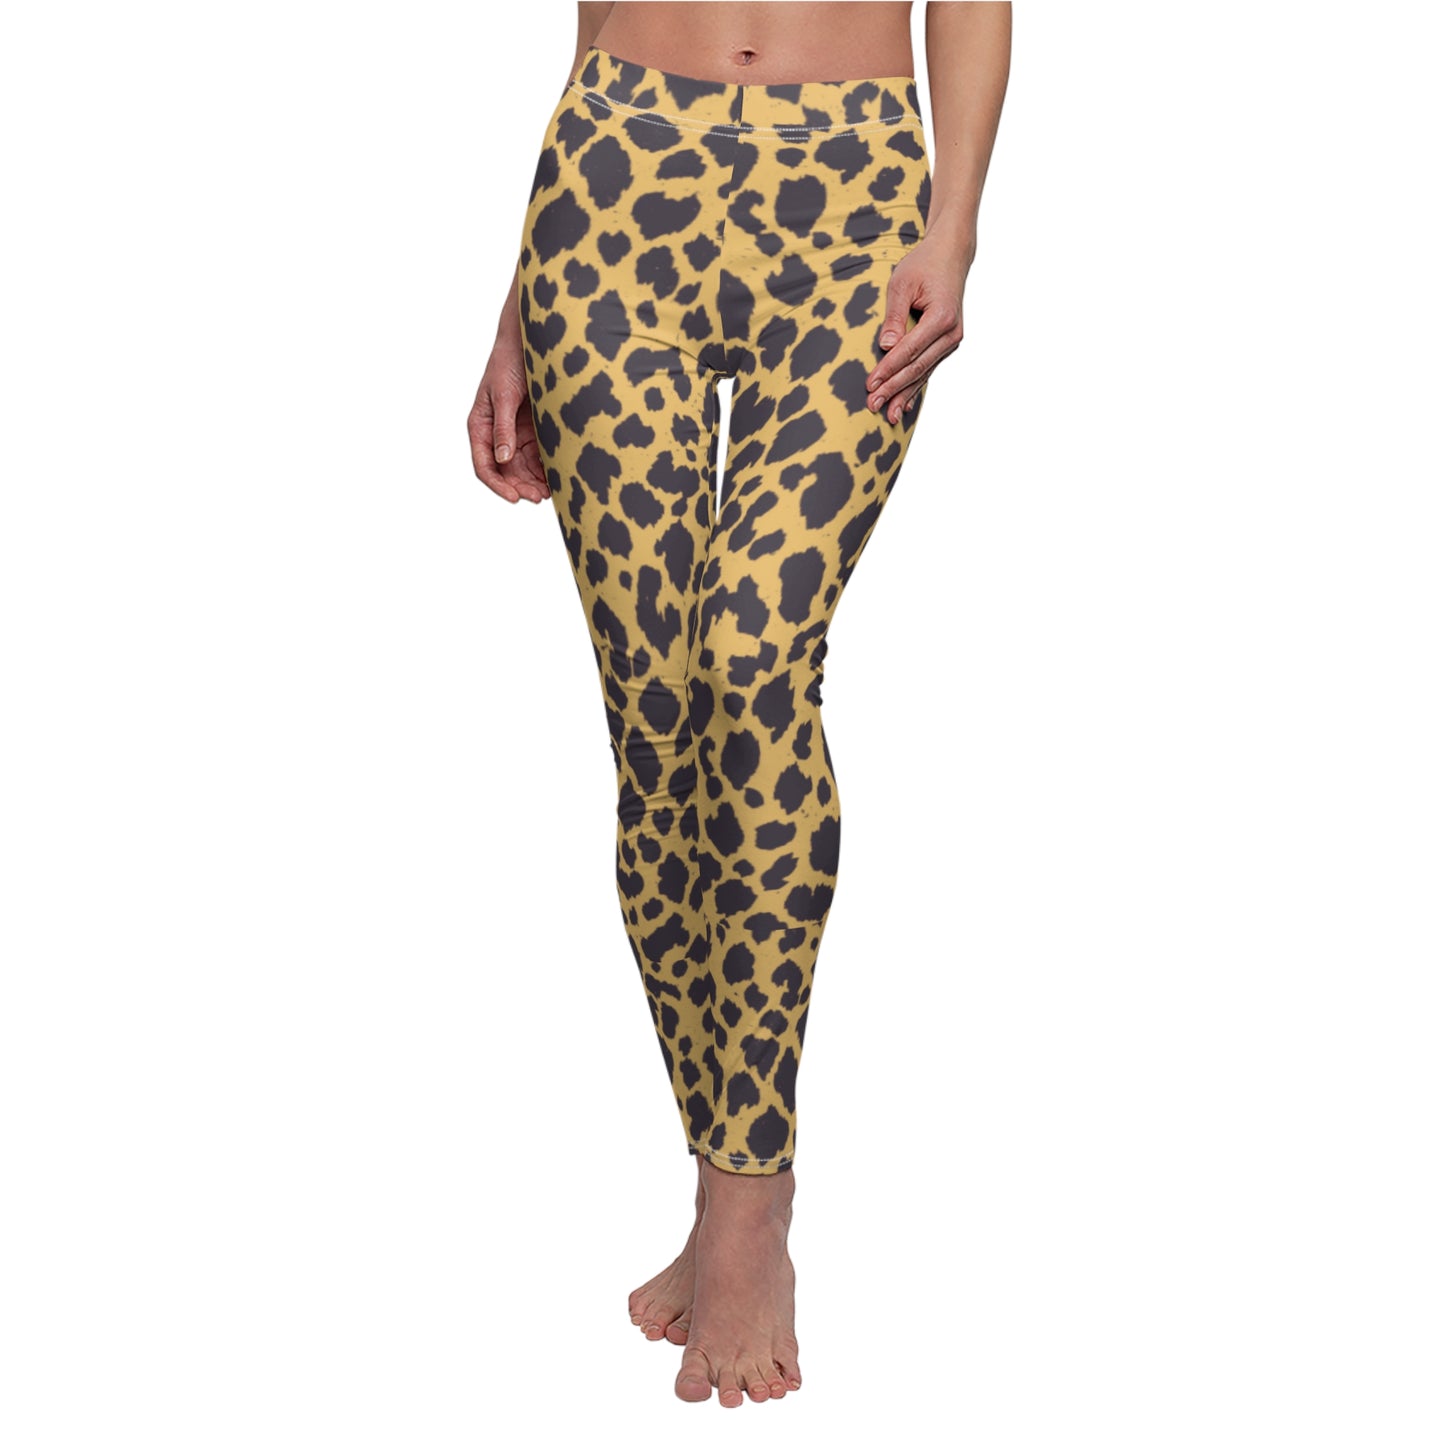 Cheetah Print, Brushed Suede Feel, Full-Length Leggings